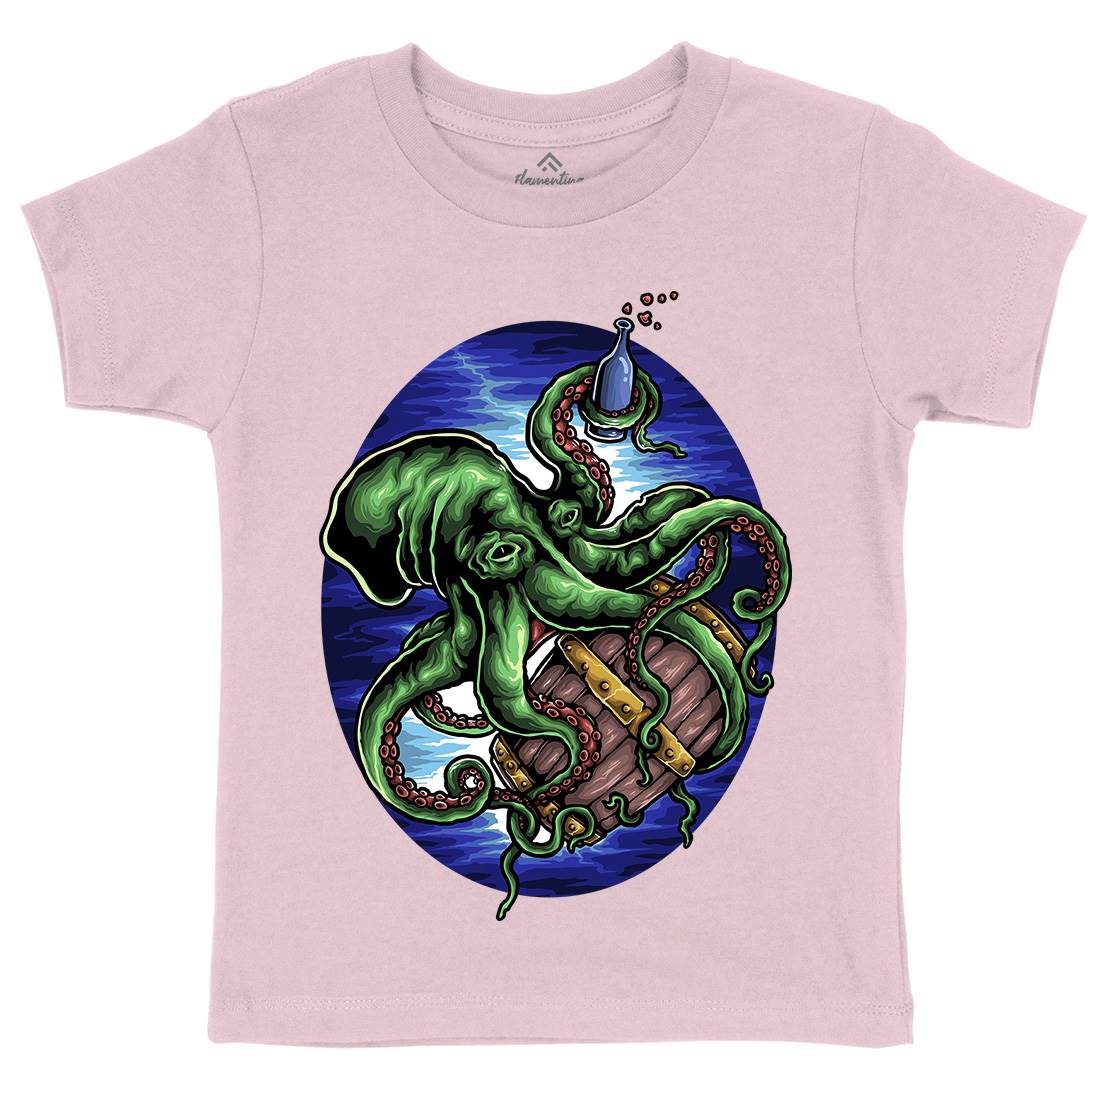 Octopus Kids Crew Neck T-Shirt Navy A444